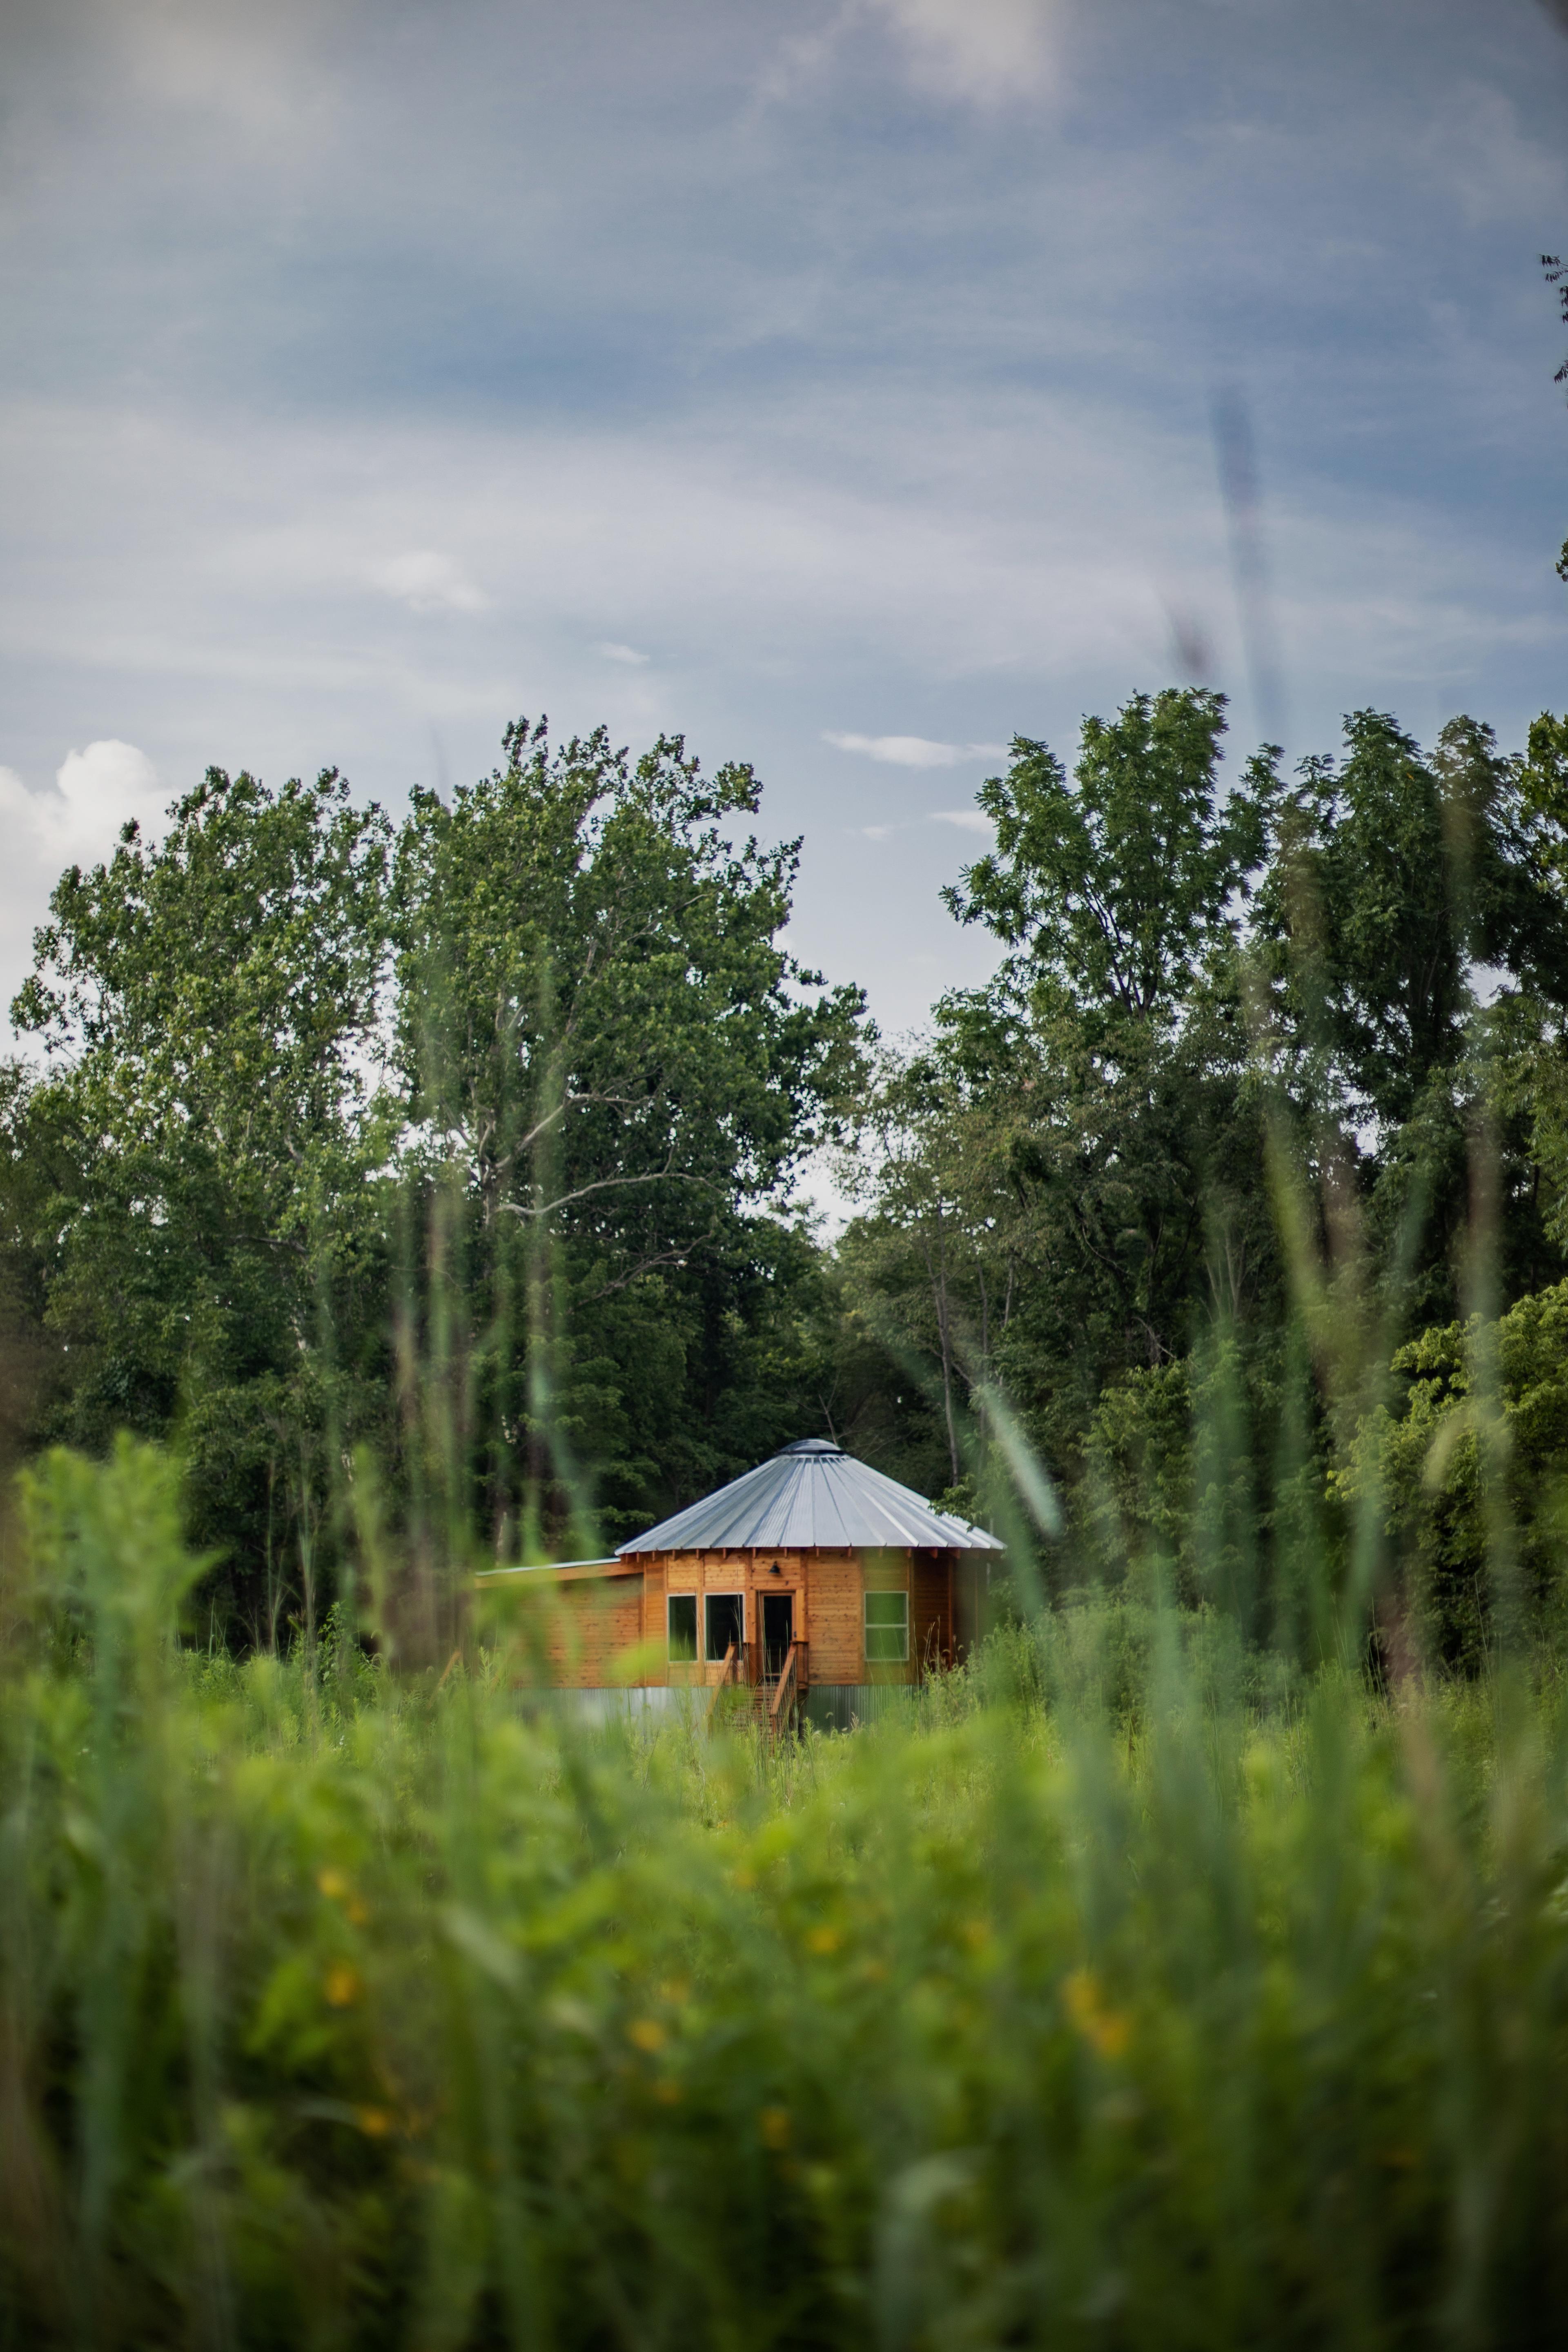 Wooden yurt in a field